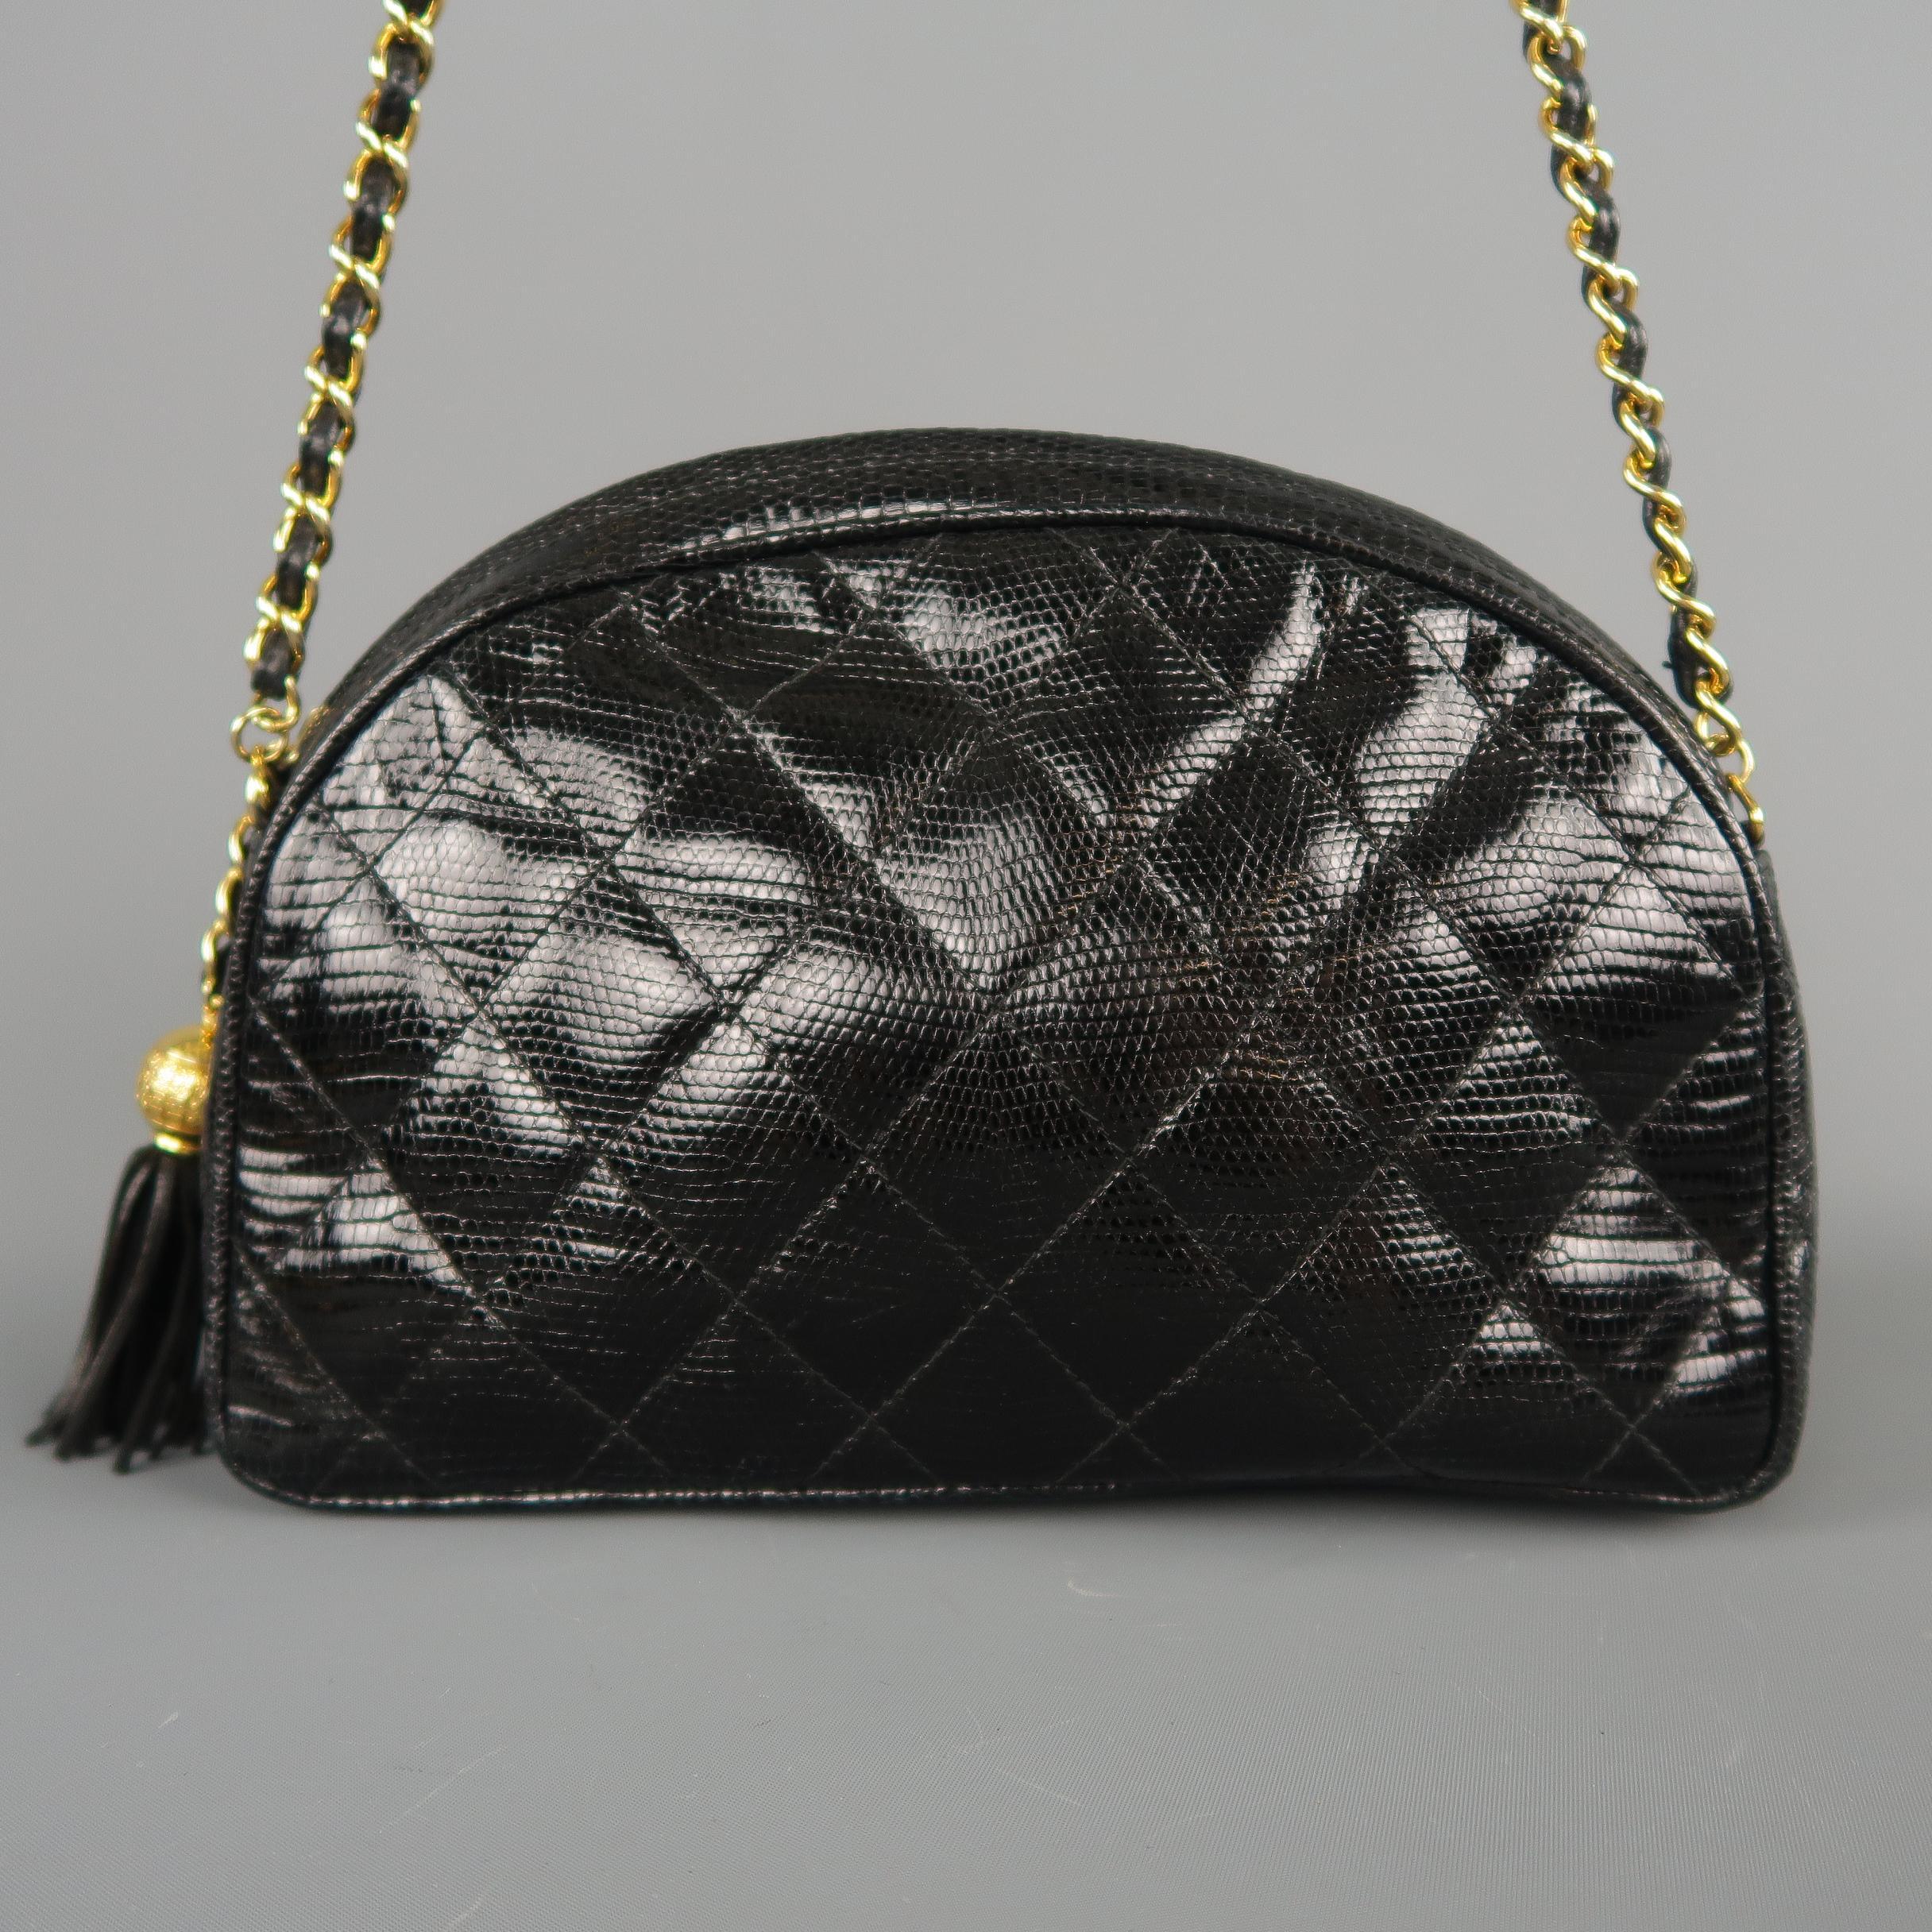 Vintage CHANEL Black Quilted Lizard Leather Gold Chain Strap Shoulder Handbag 3